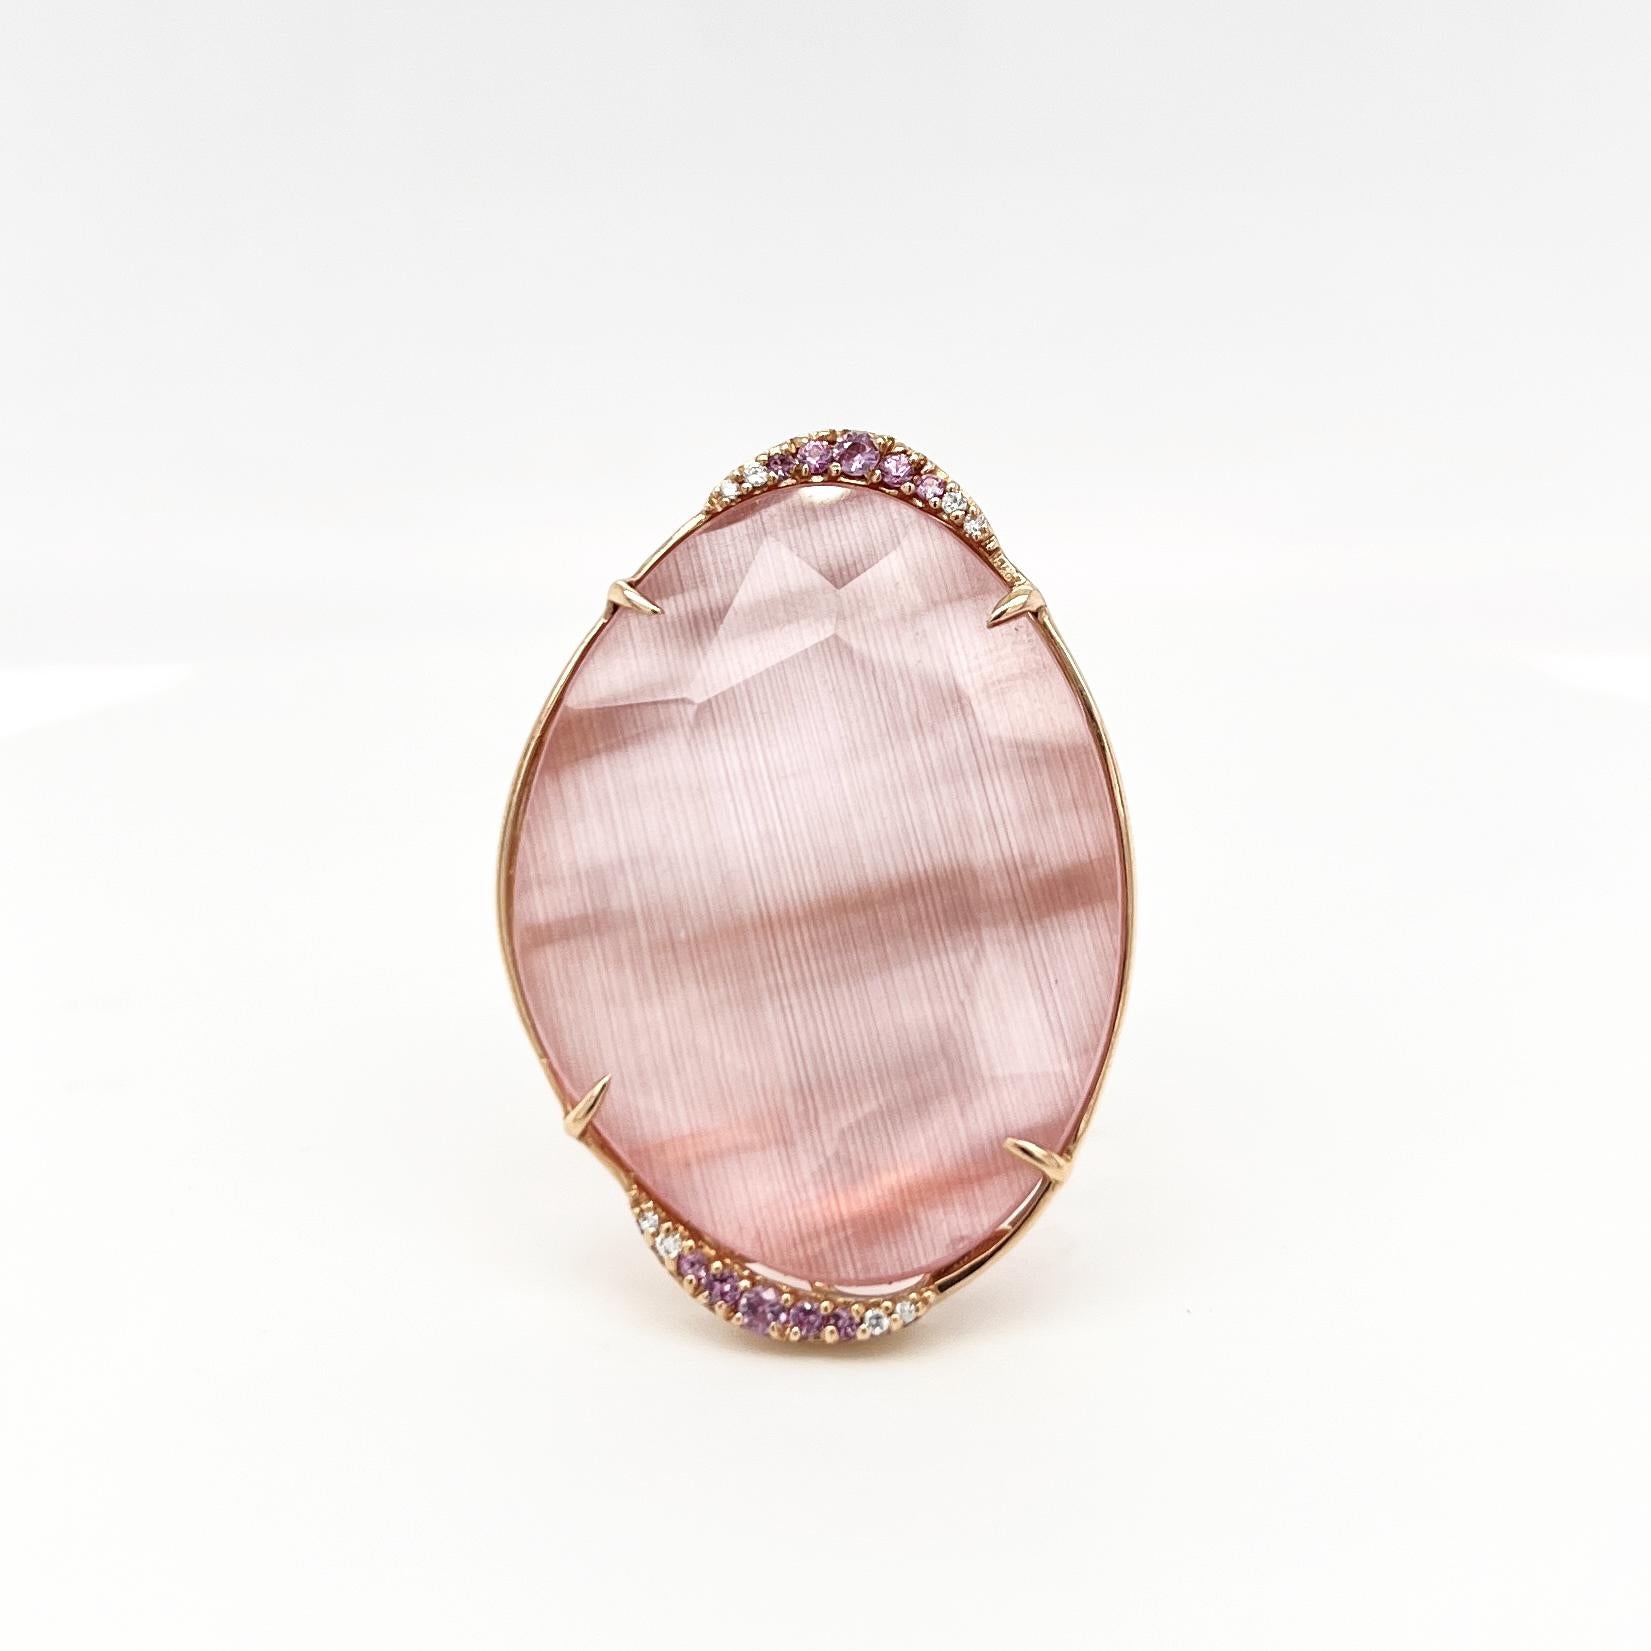 Der Ring der Optic Chic Collection ist ein einzigartiges und modernes Stück, das aus den besten Materialien hergestellt wird. Es verfügt über einen 18K Gold Körper mit weißen natürlichen Diamanten und rosa Saphiren , um einen Hauch von Luxus und